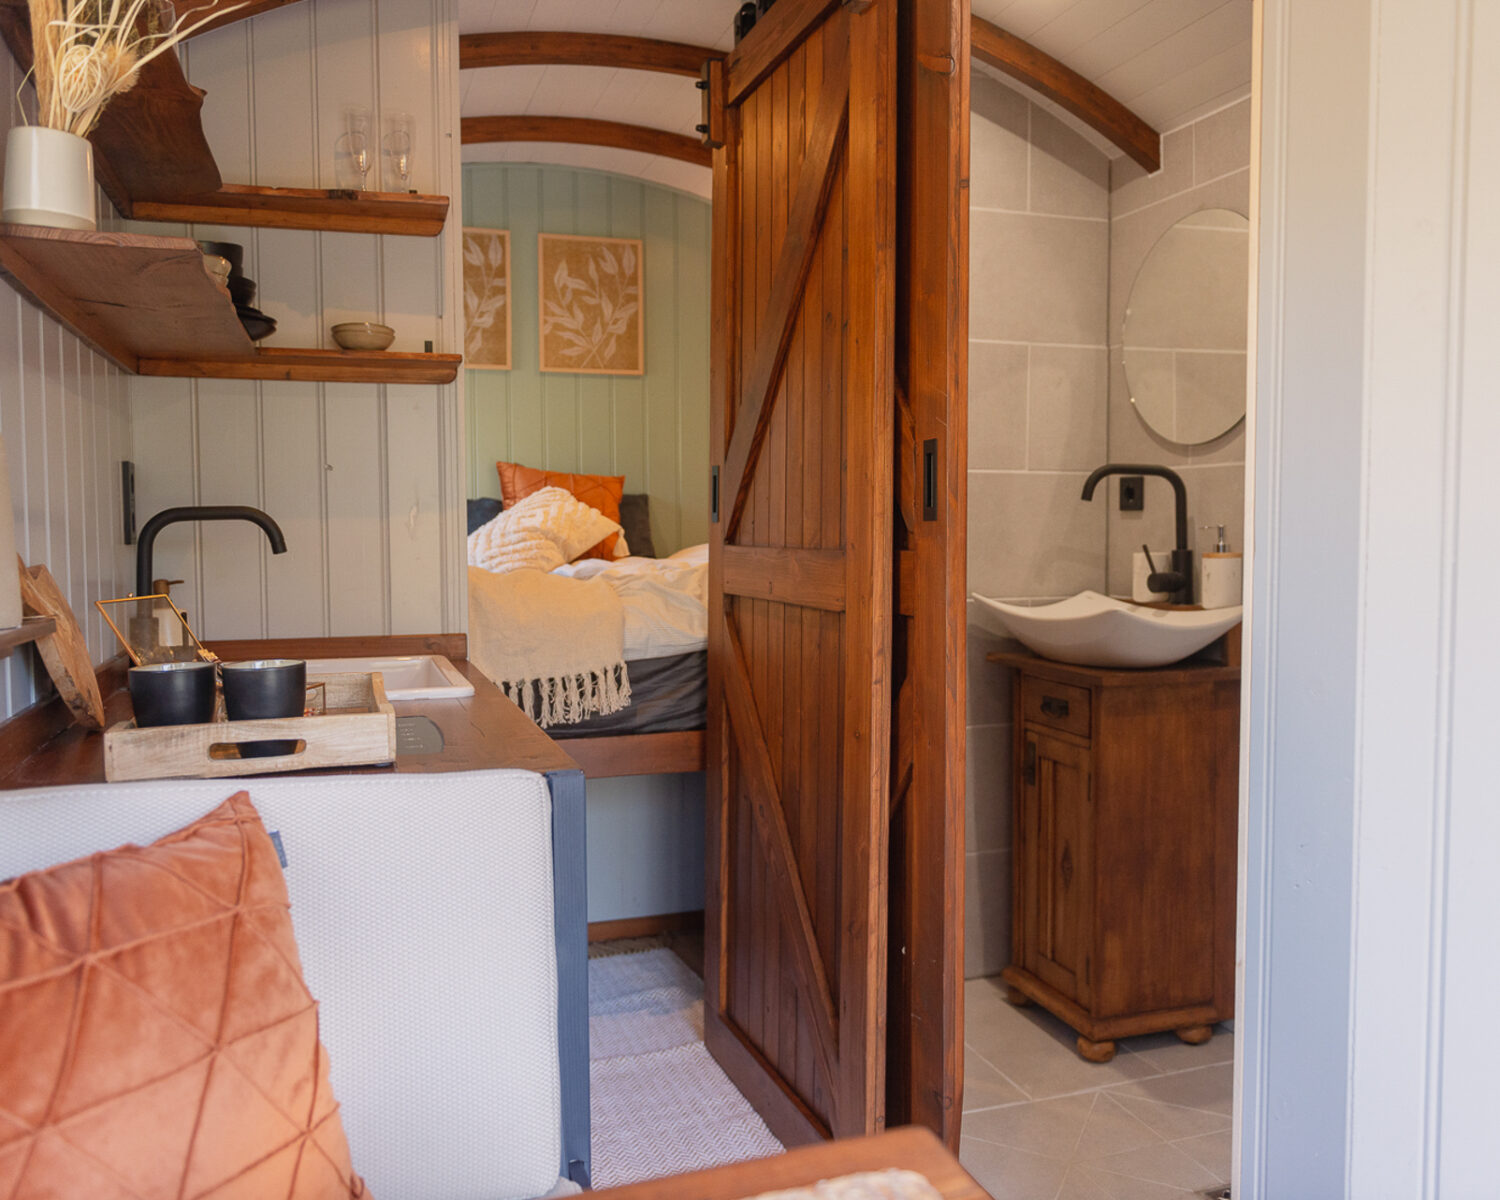 Keuken en badkamer in een herderswagen